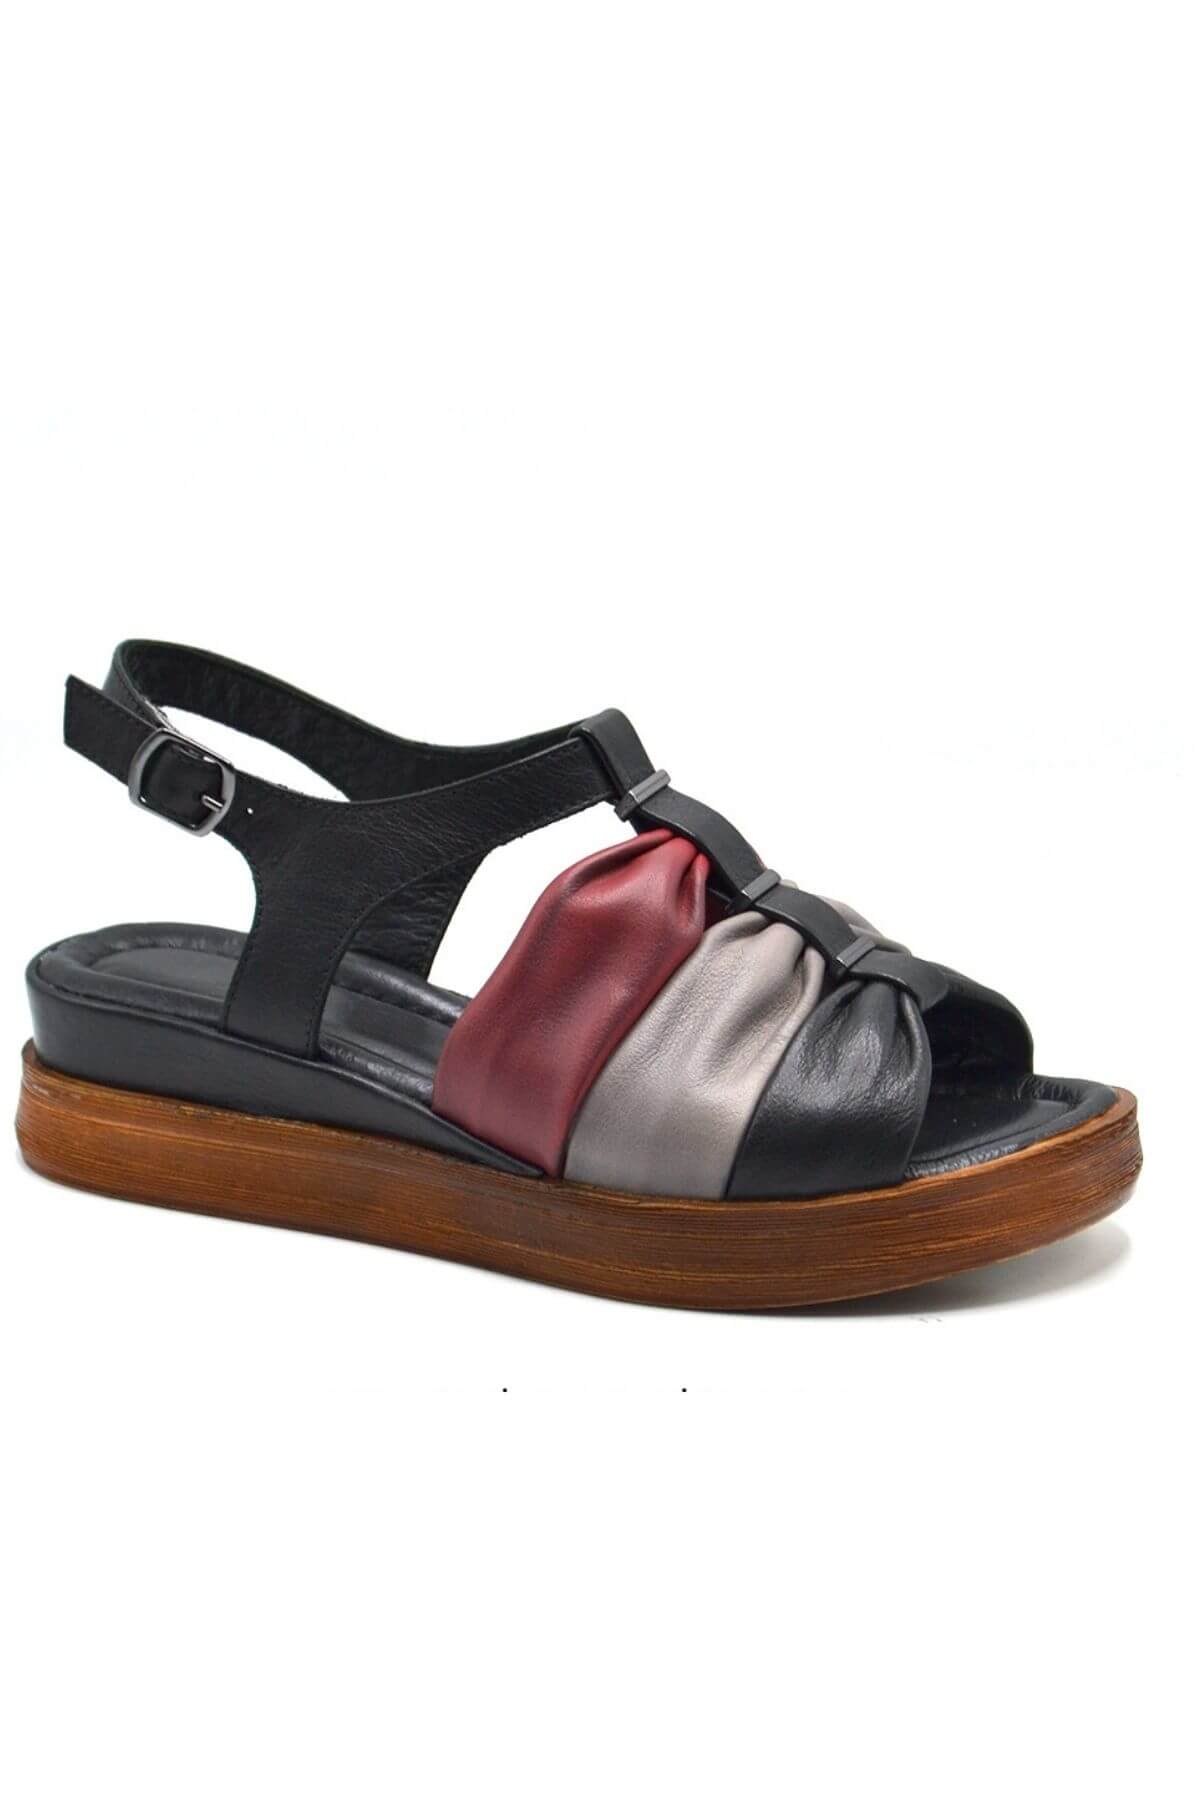 Kadın Comfort Deri Sandalet Siyah 2216412Y